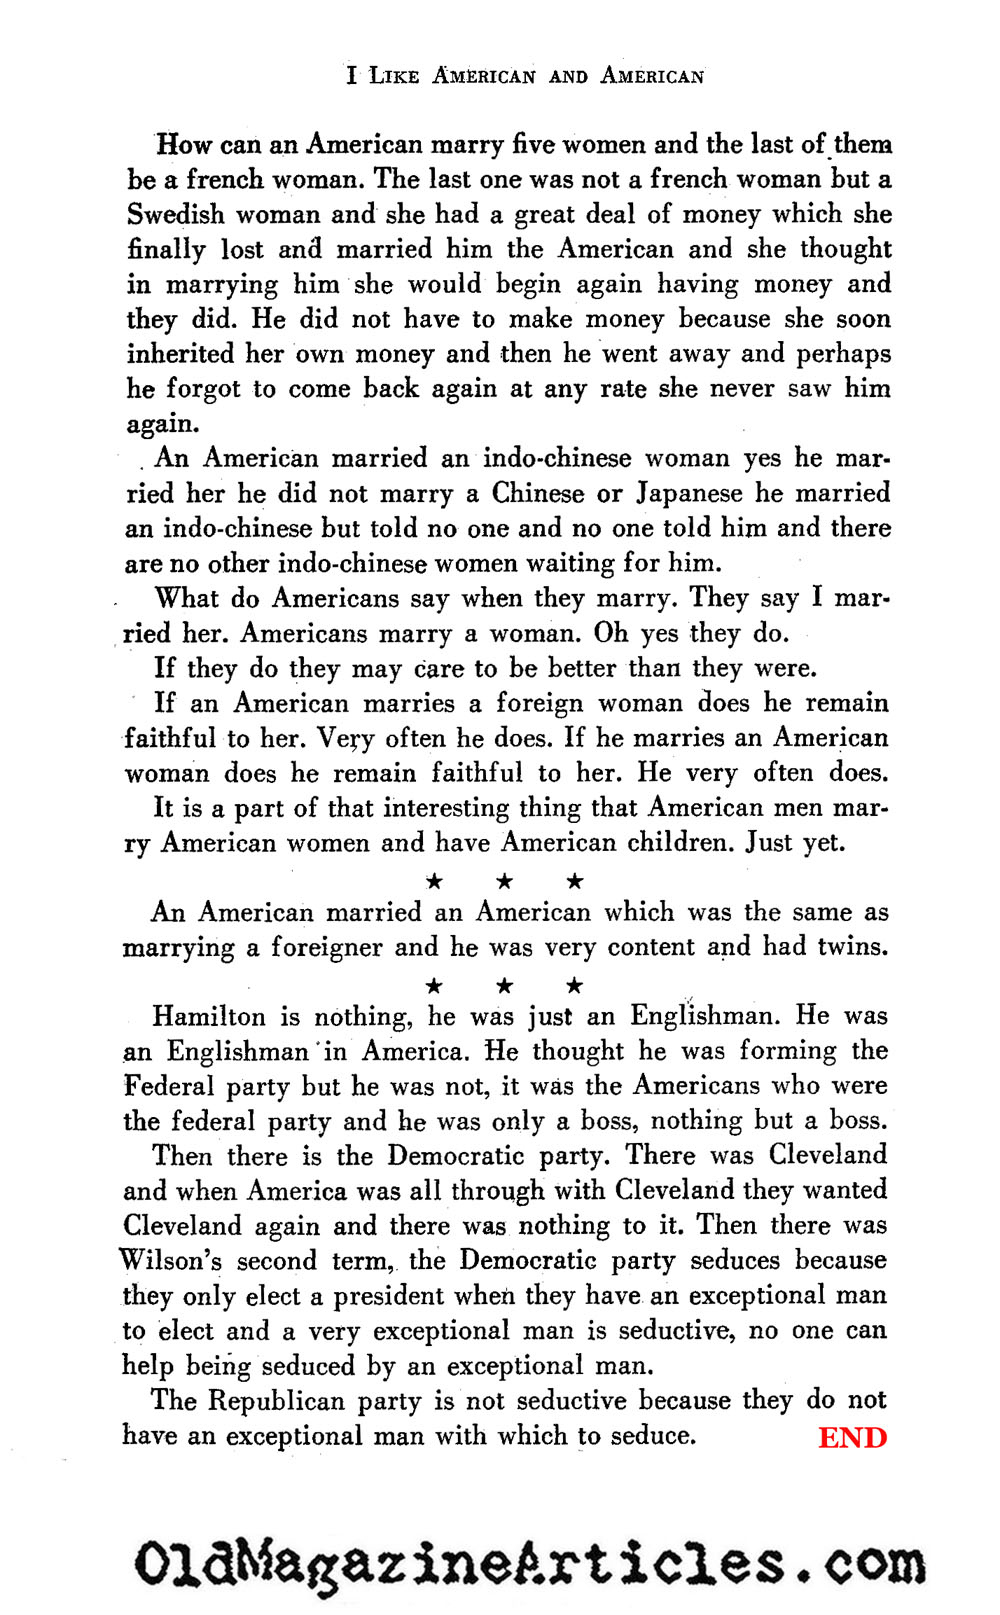 Gertrude Stein on America ('47 Magazine, 1947)